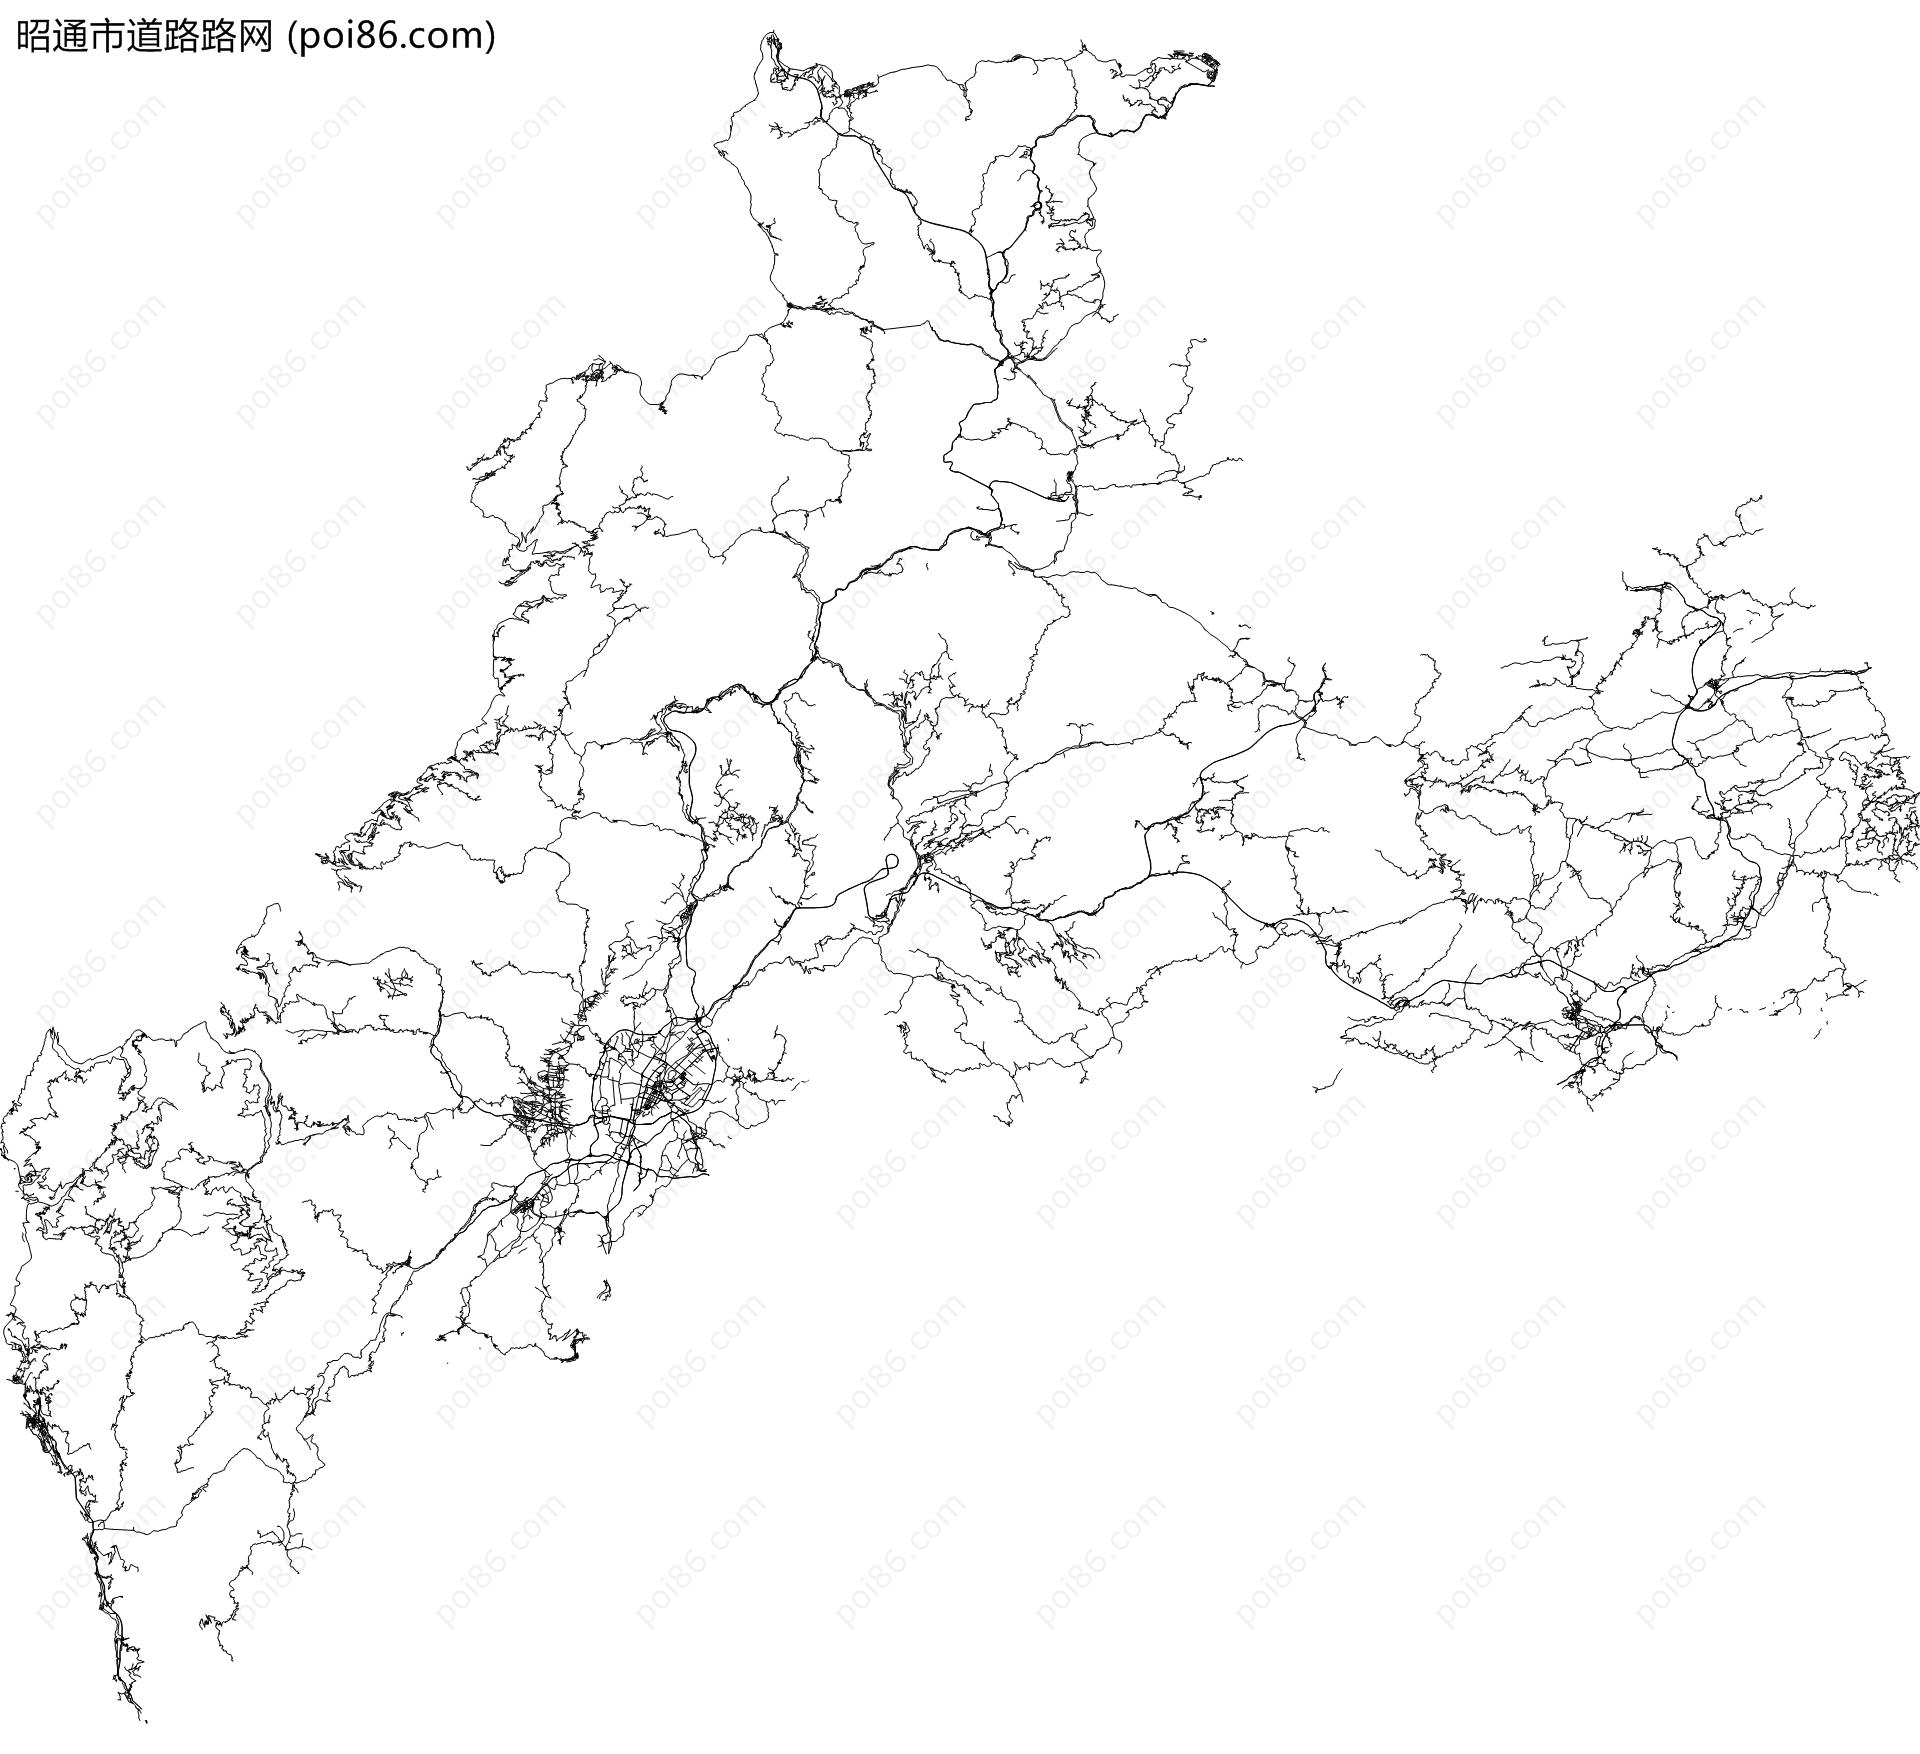 昭通市道路路网地图